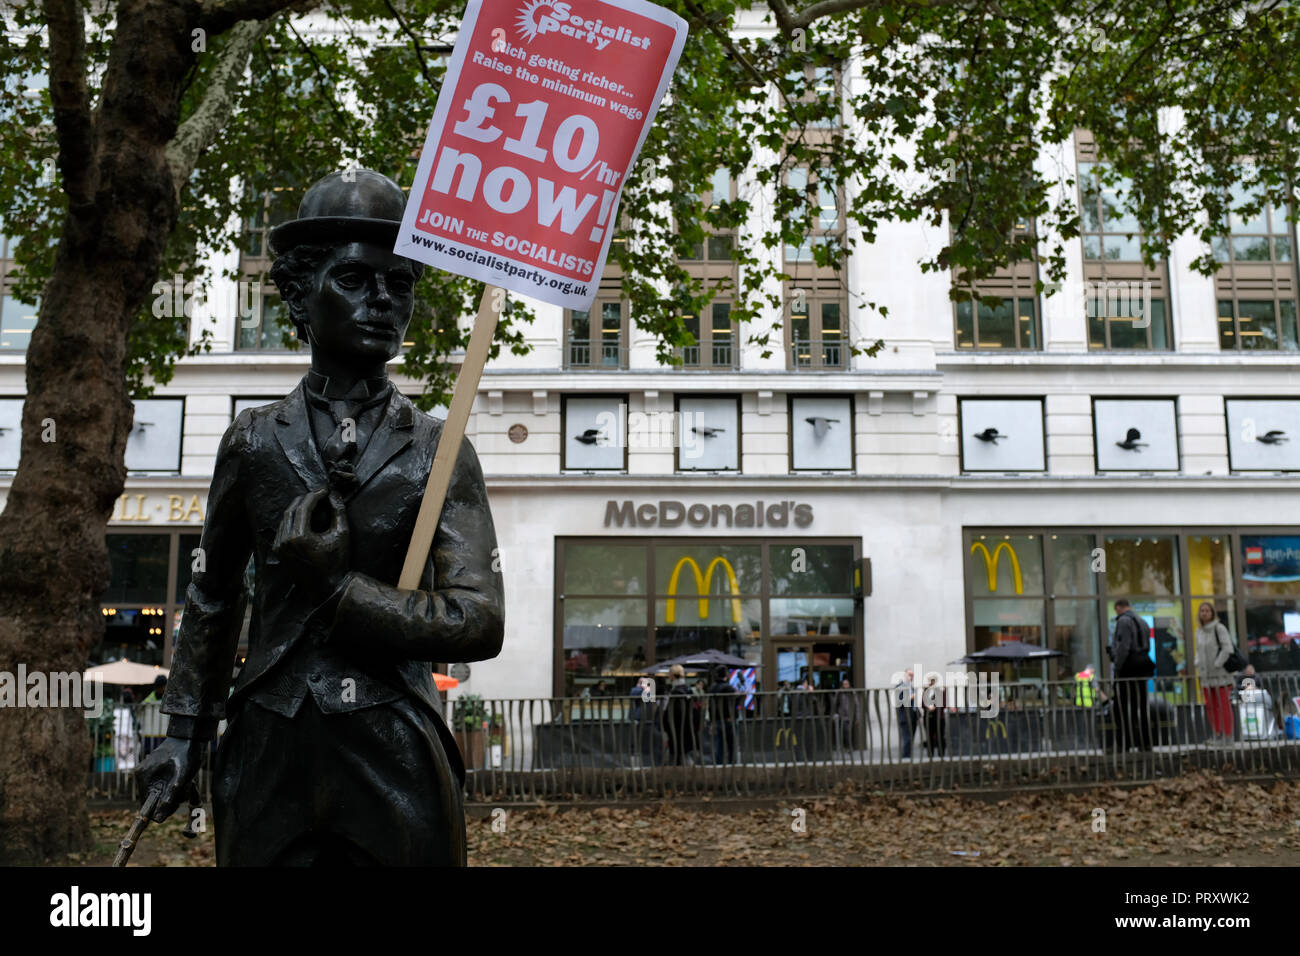 Ein Charles Chaplin Skulptur gesehen mit einem Aushang £ 10/hr Jetzt! Während des Protestes. Wetherspoons, TGI Fridays, und McDonald's Arbeiter Kundgebung zusammen in London, bessere Arbeitsbedingungen und eine angemessene Bezahlung in der Hotellerie zu verlangen. Stockfoto